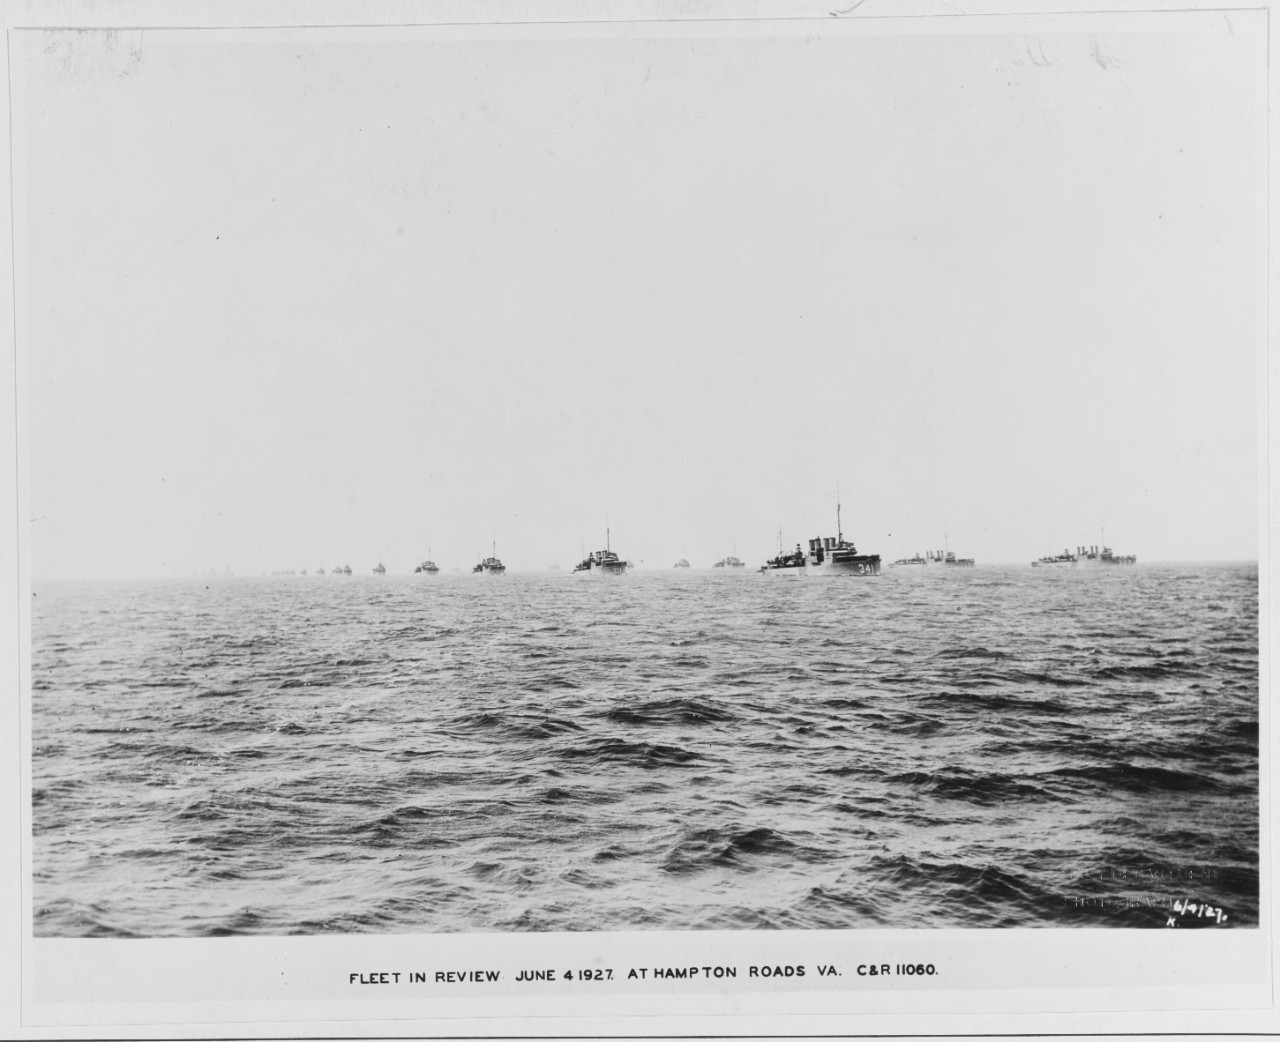 Fleet in review, 1927